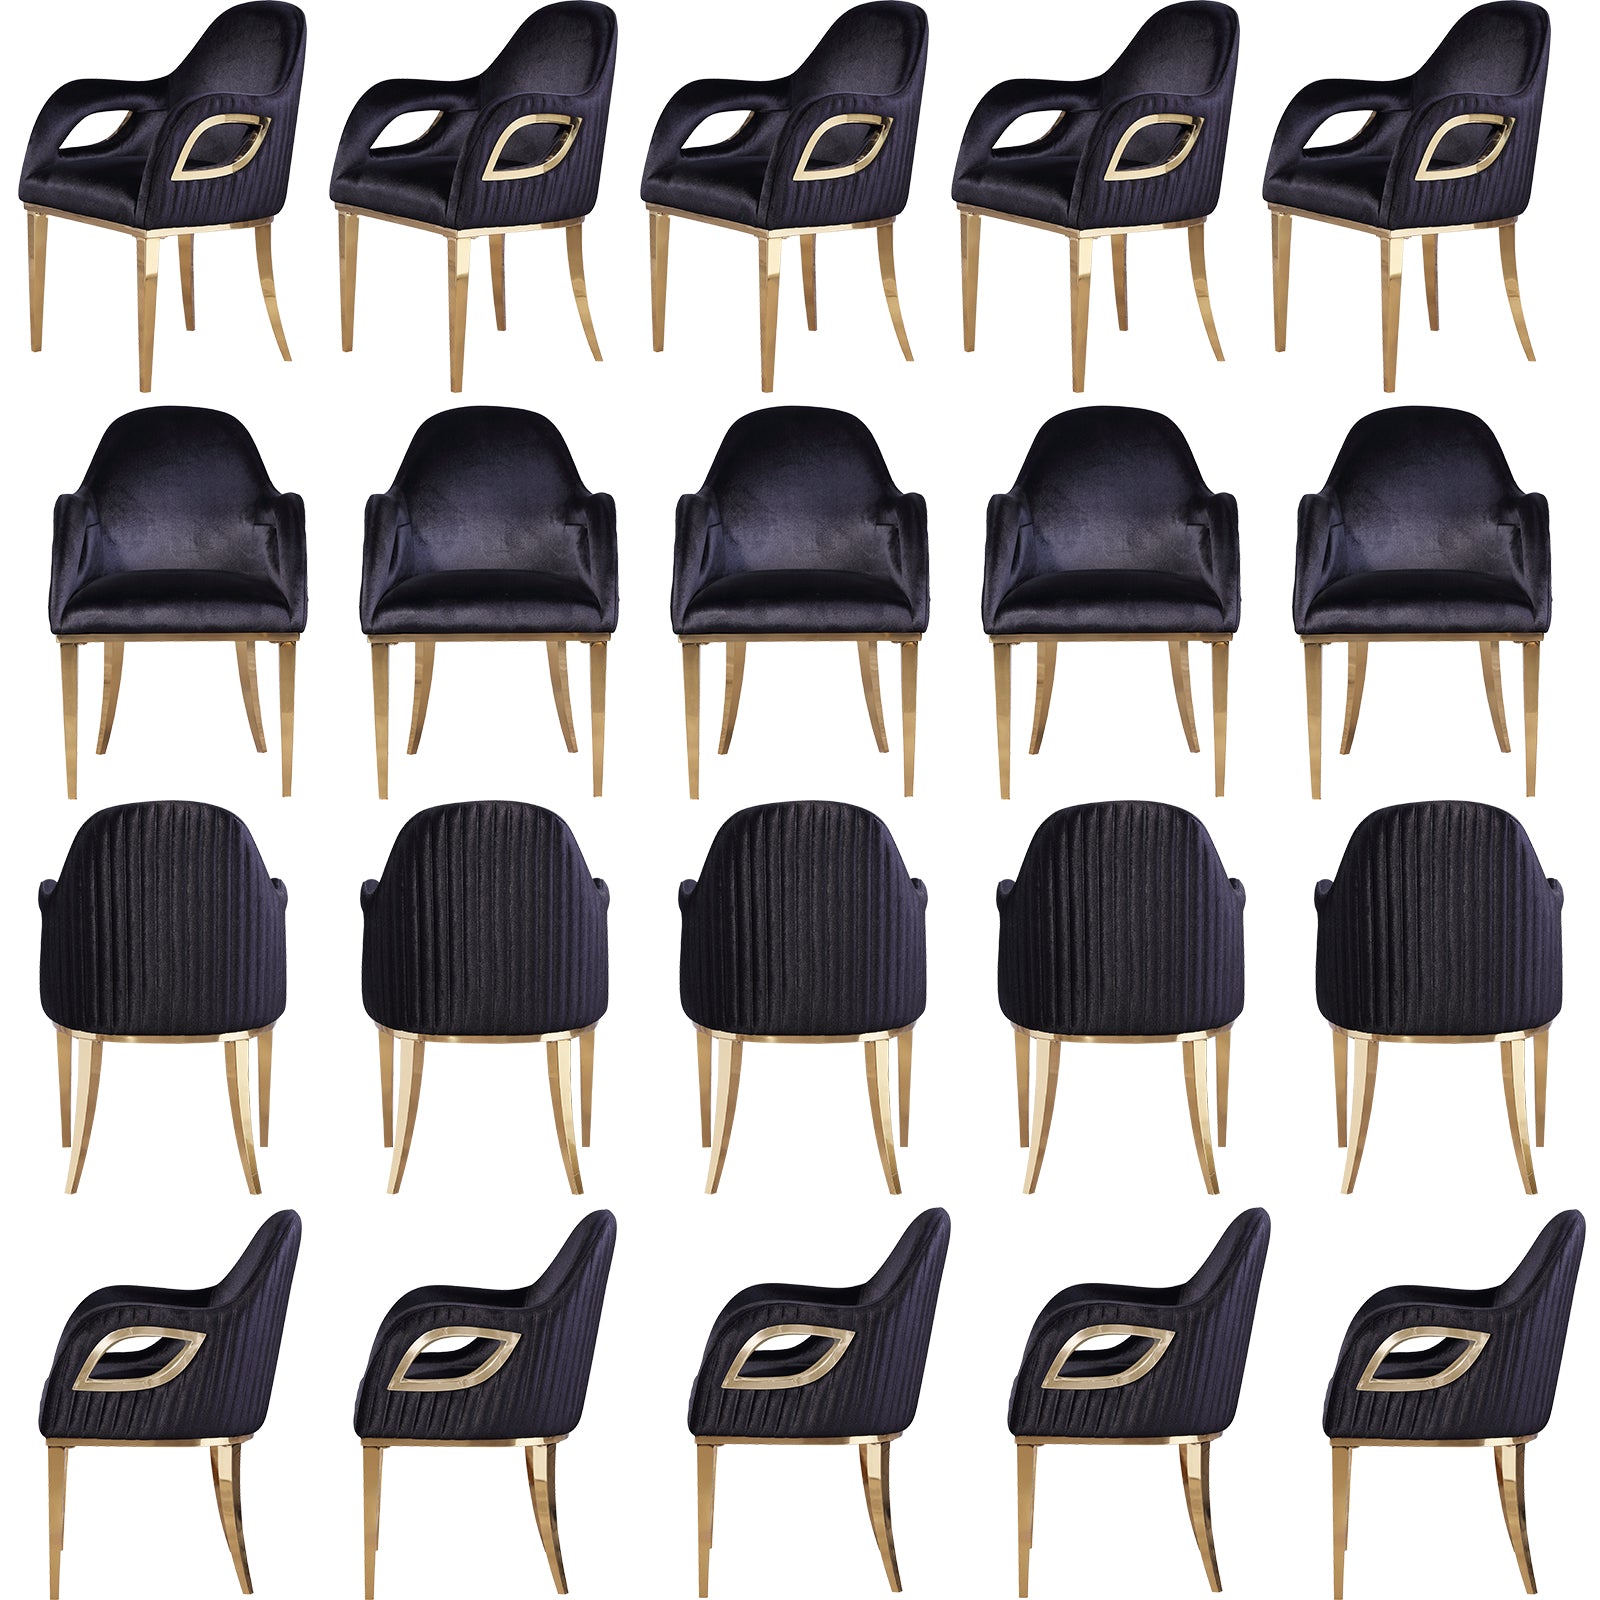 Wholesale Black velvet chairs with Fox-Eye Armrest